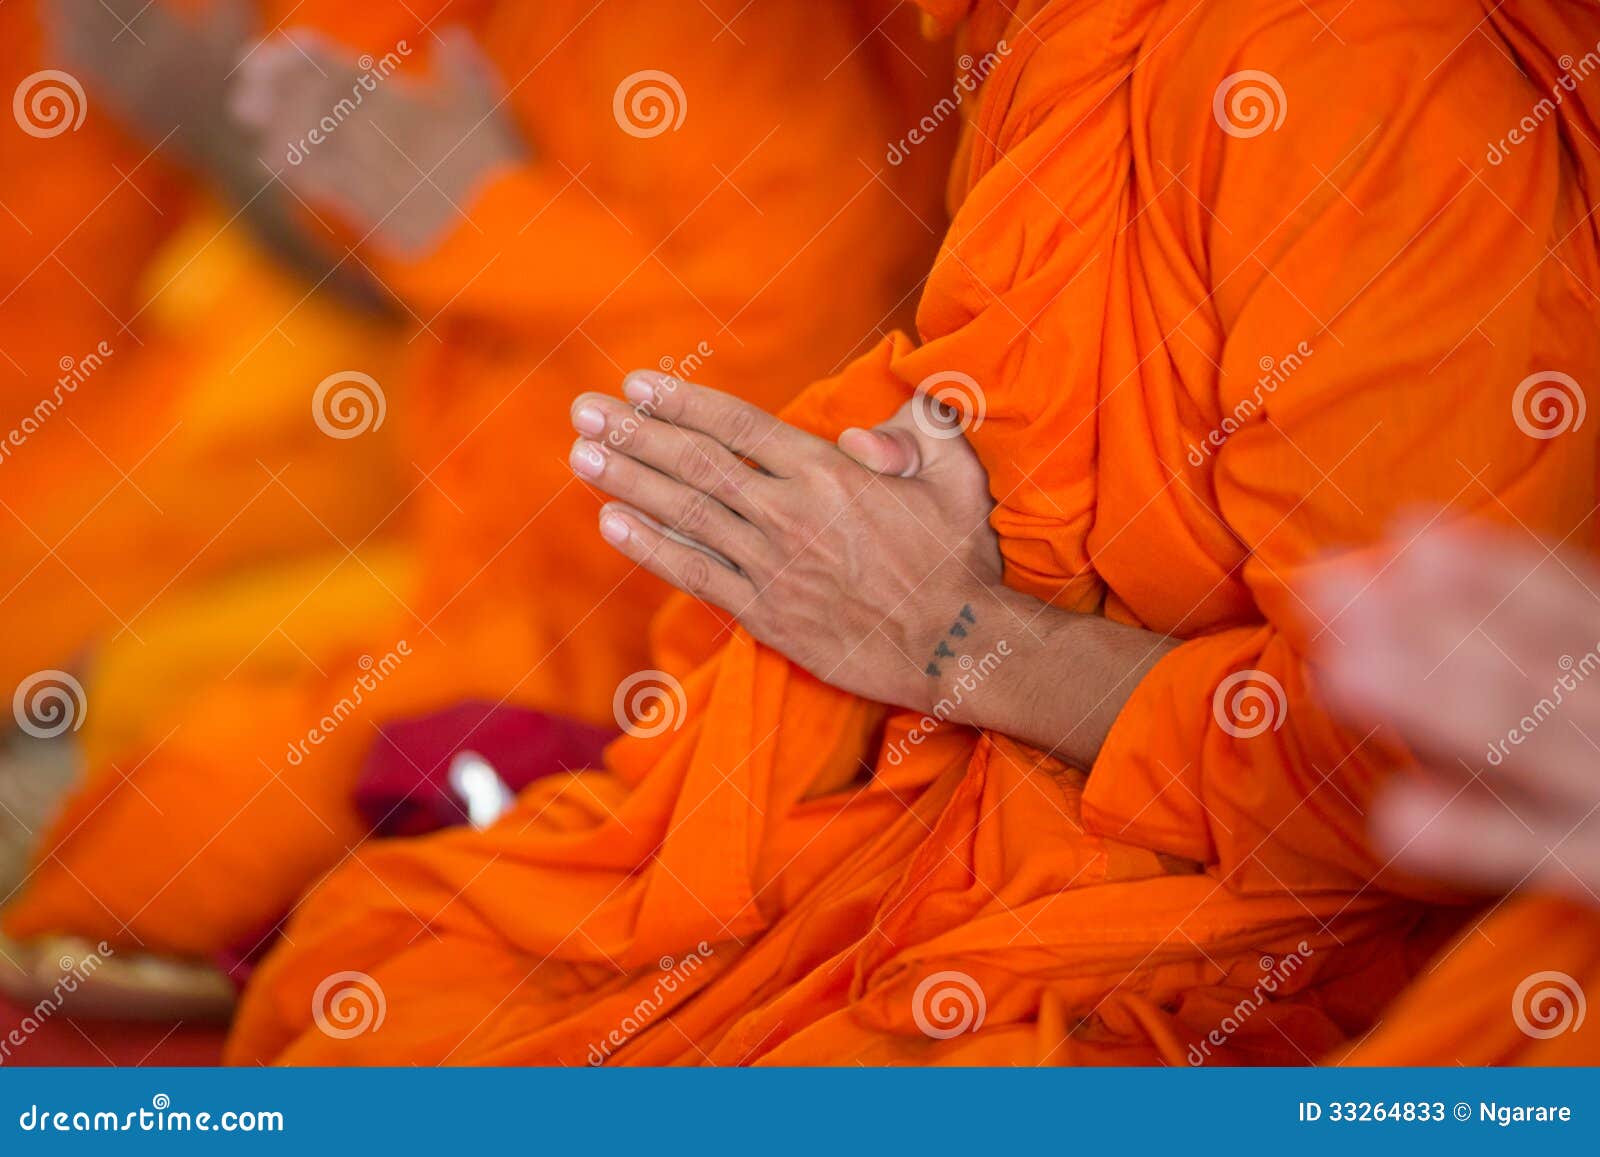 Tatuagem monge - Tatuado pelas mãos de um monge.